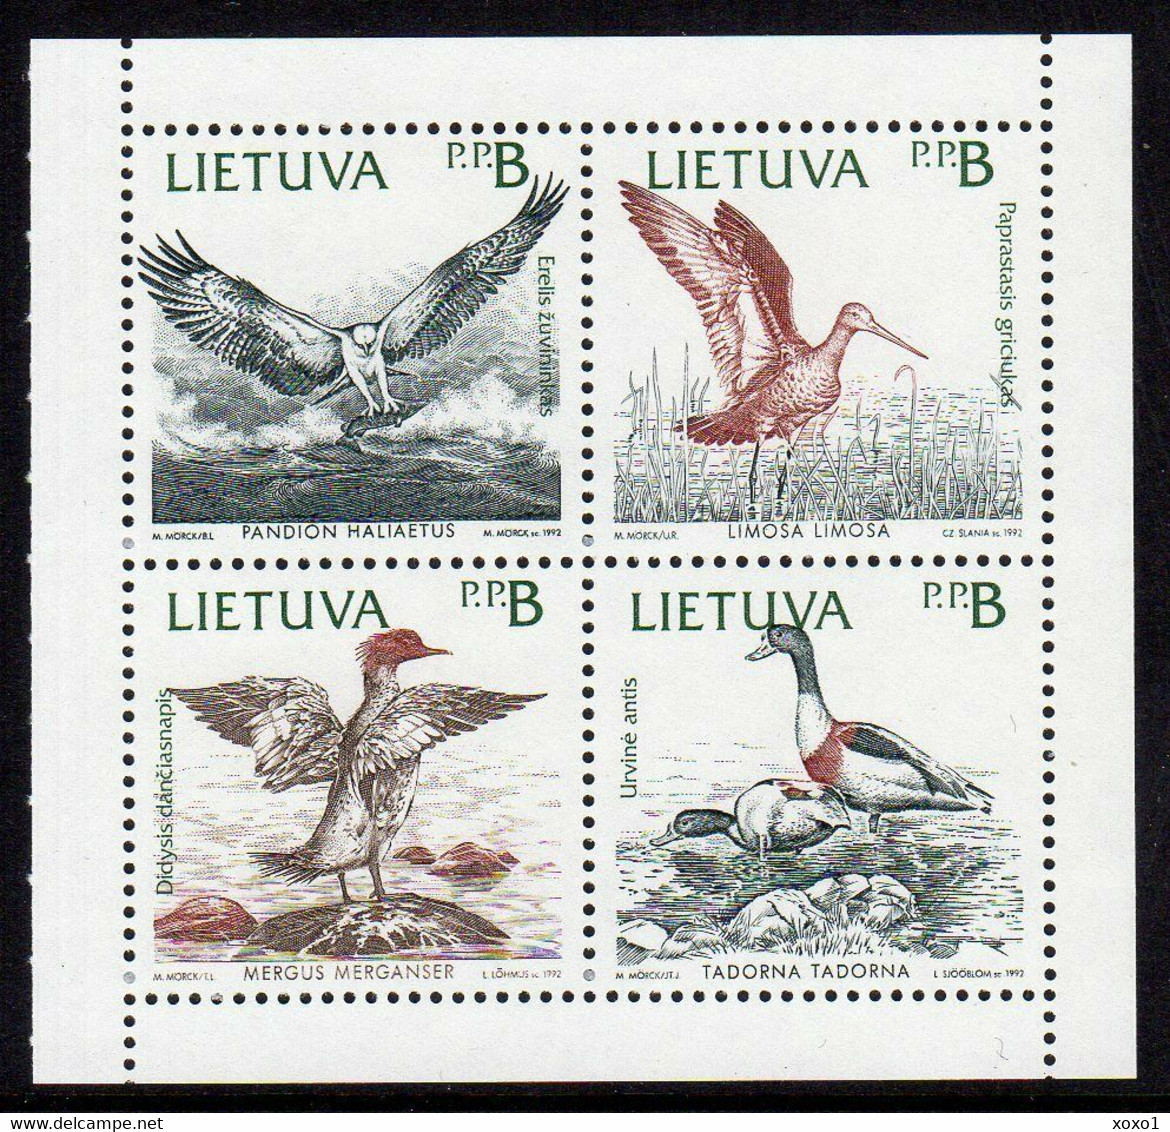 Lithuania 1992 MiNr. 501-4 Litauen Joint Issues BIRDS Osprey, Black-tailed Godwit, Merganser, Shelduck 4v Mnh ** 2.50 € - Lituania